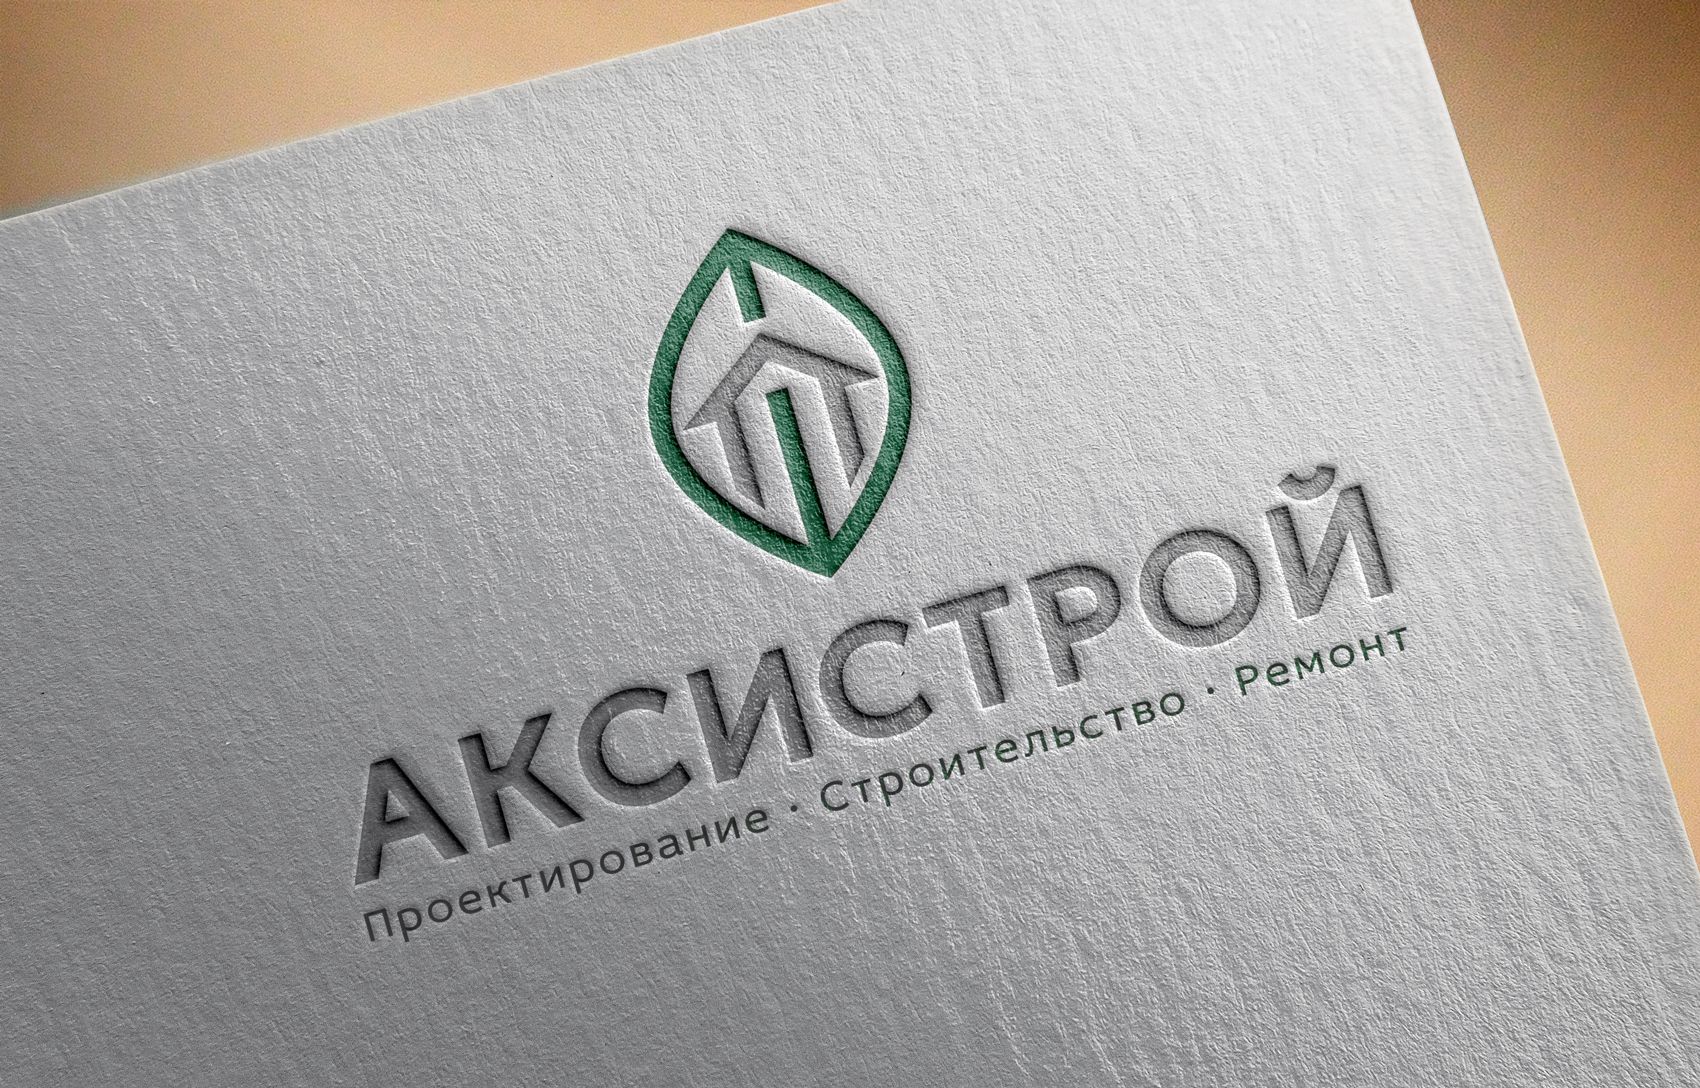 Логотип для Аксистрой - дизайнер designer12345